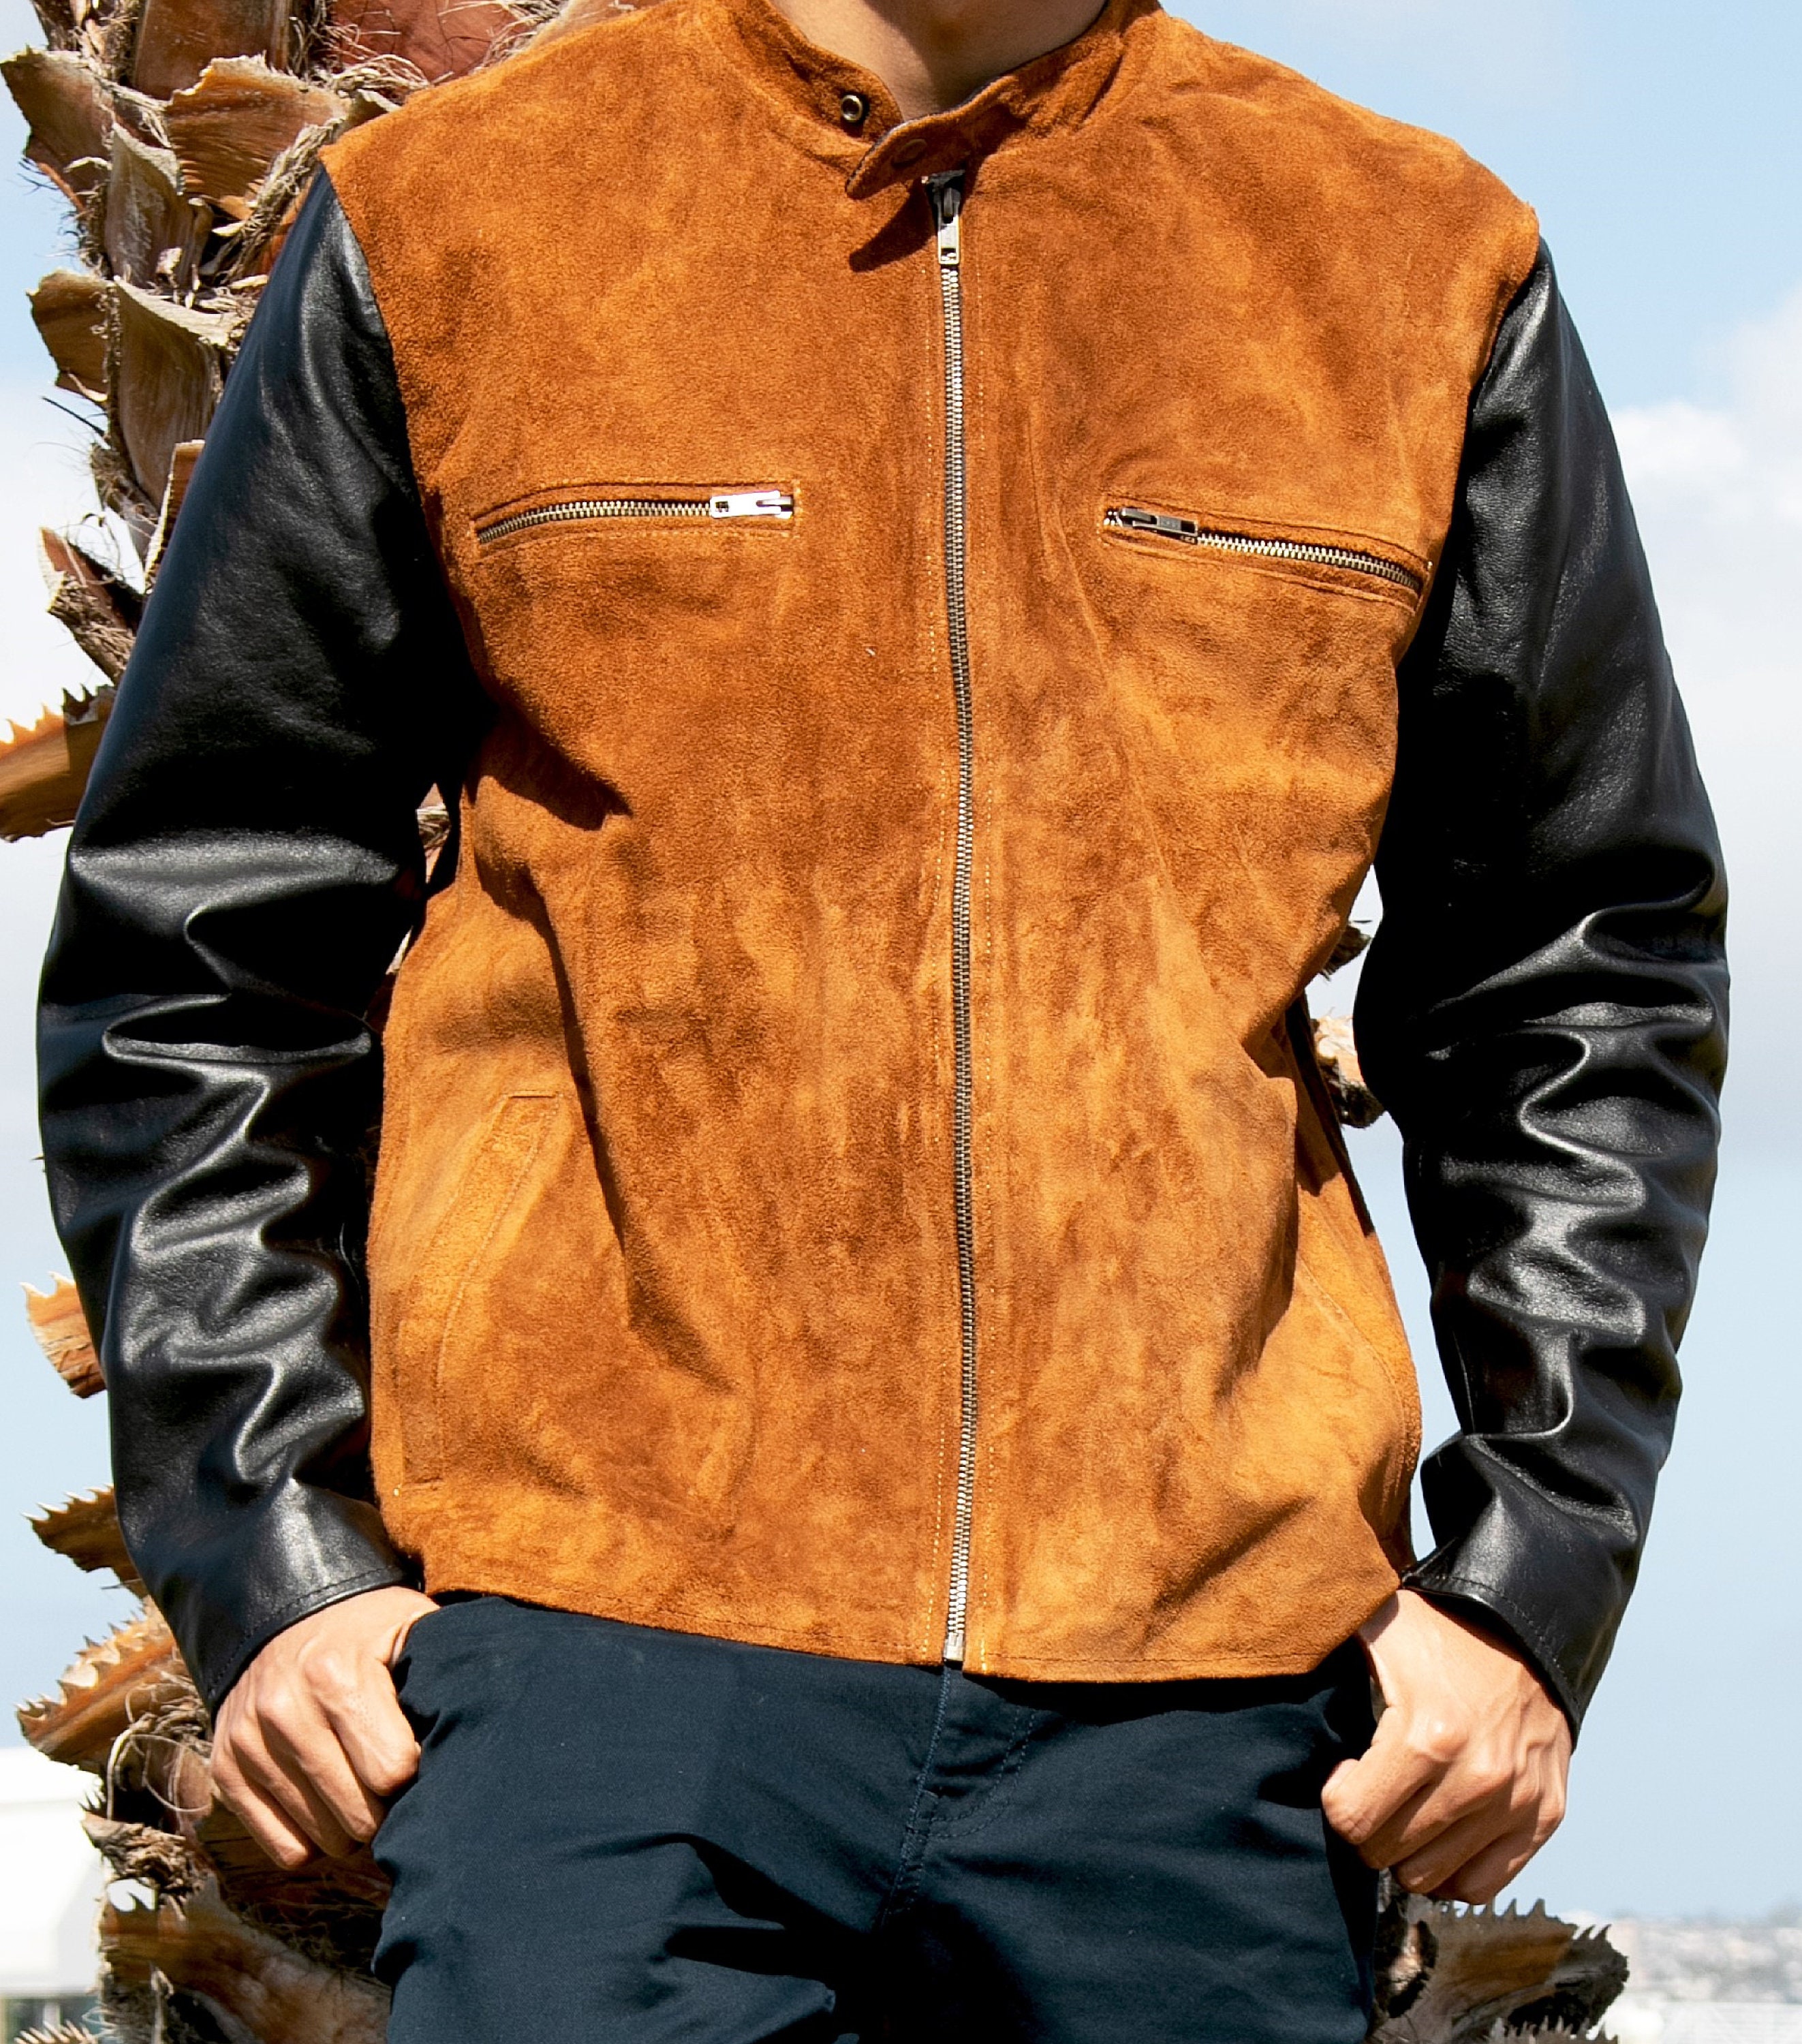 Men's Leather Jacket Leather Jacket for Men Suede - Etsy